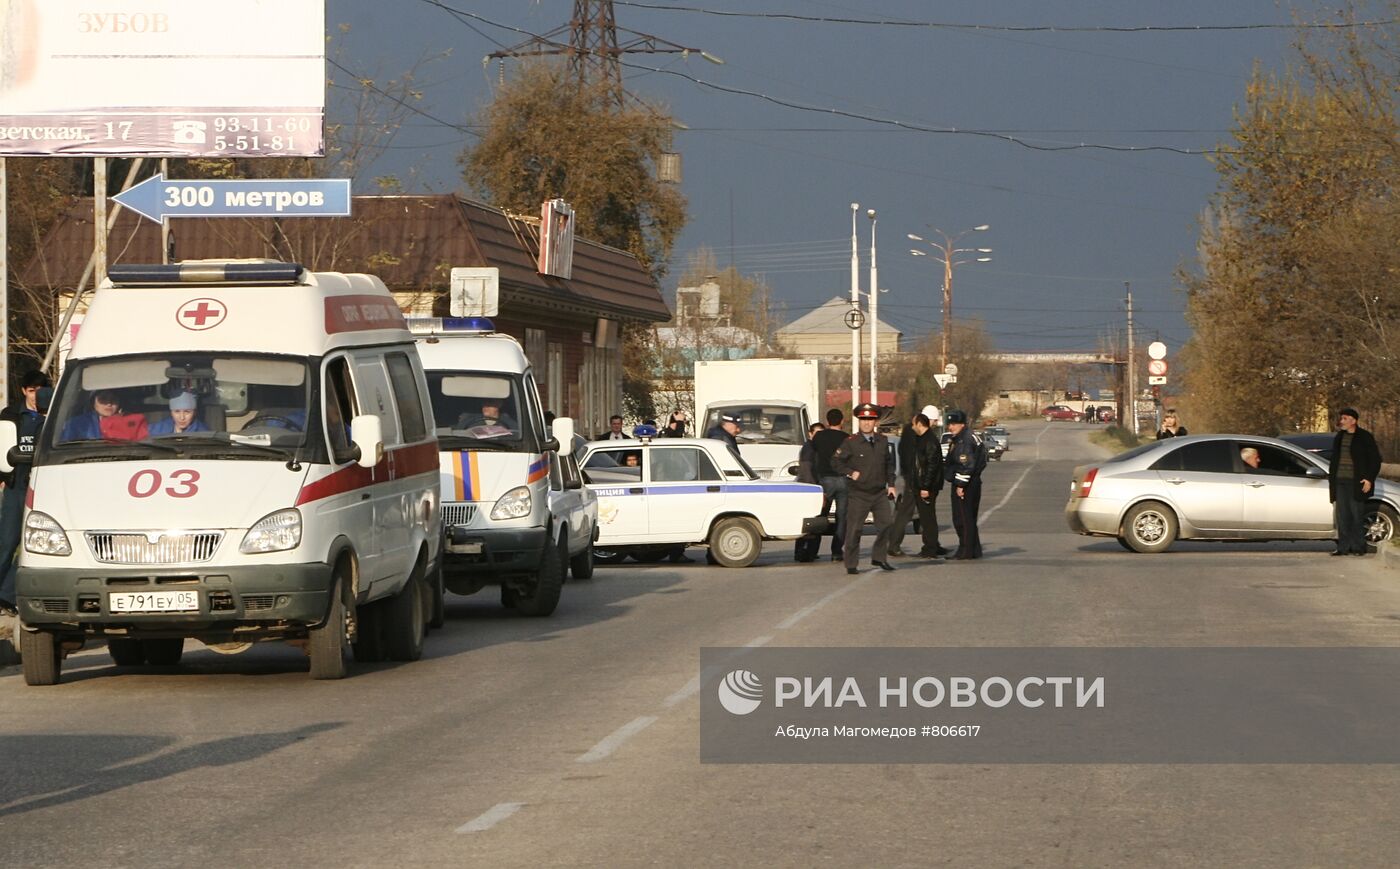 Две бомбы обезврежены в дагестанском Каспийске